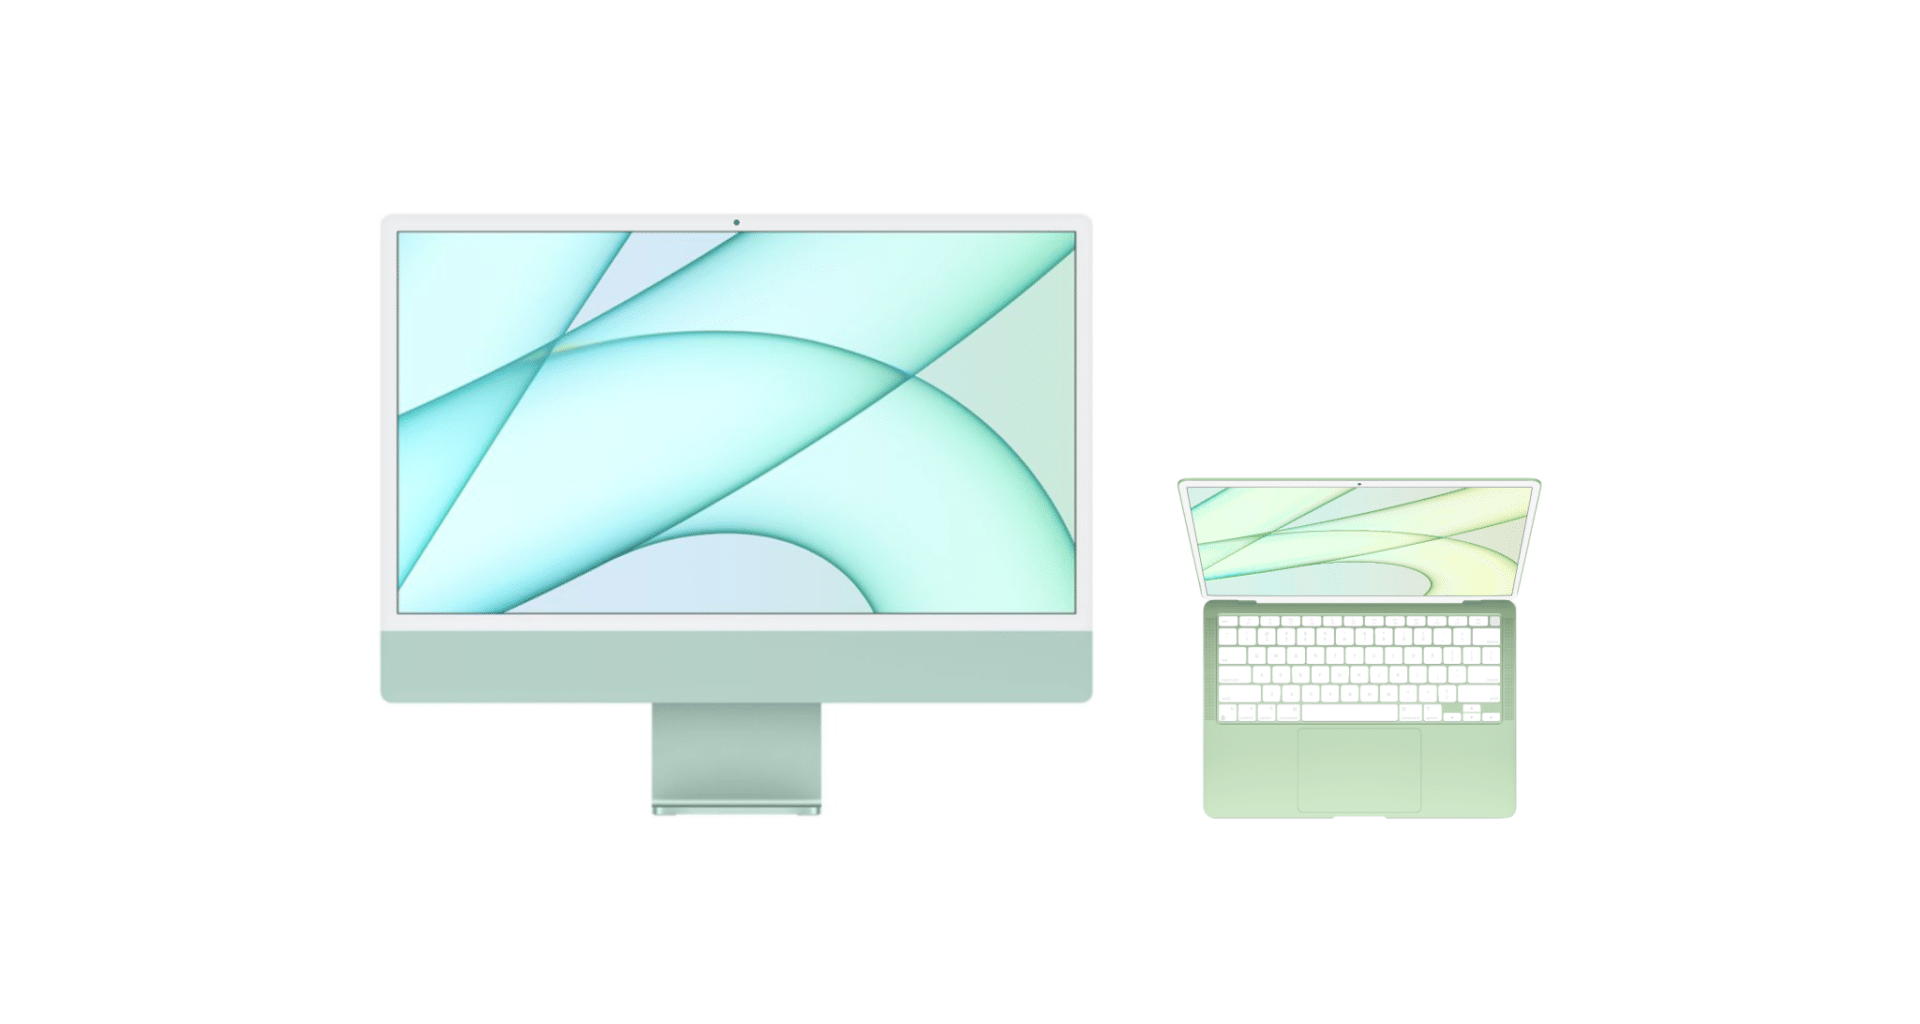 Conceito de MacBook Air inspirado no novo iMac